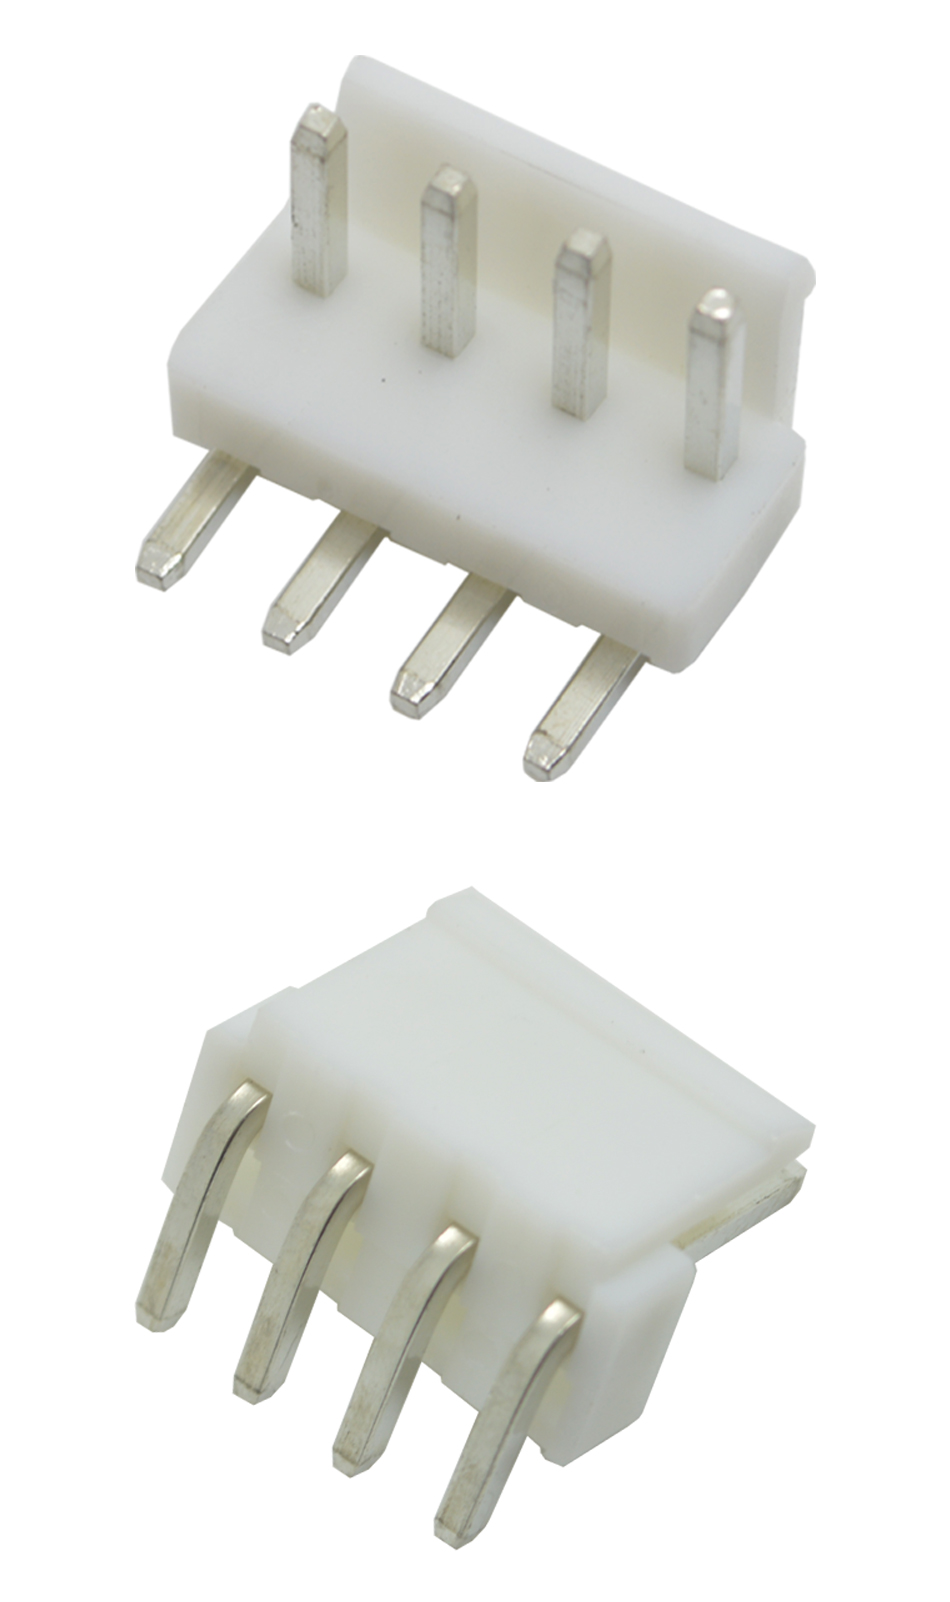 弯针插座 VH3.96-6AW 间距 拔插式 接插件 连接器插座,宏利